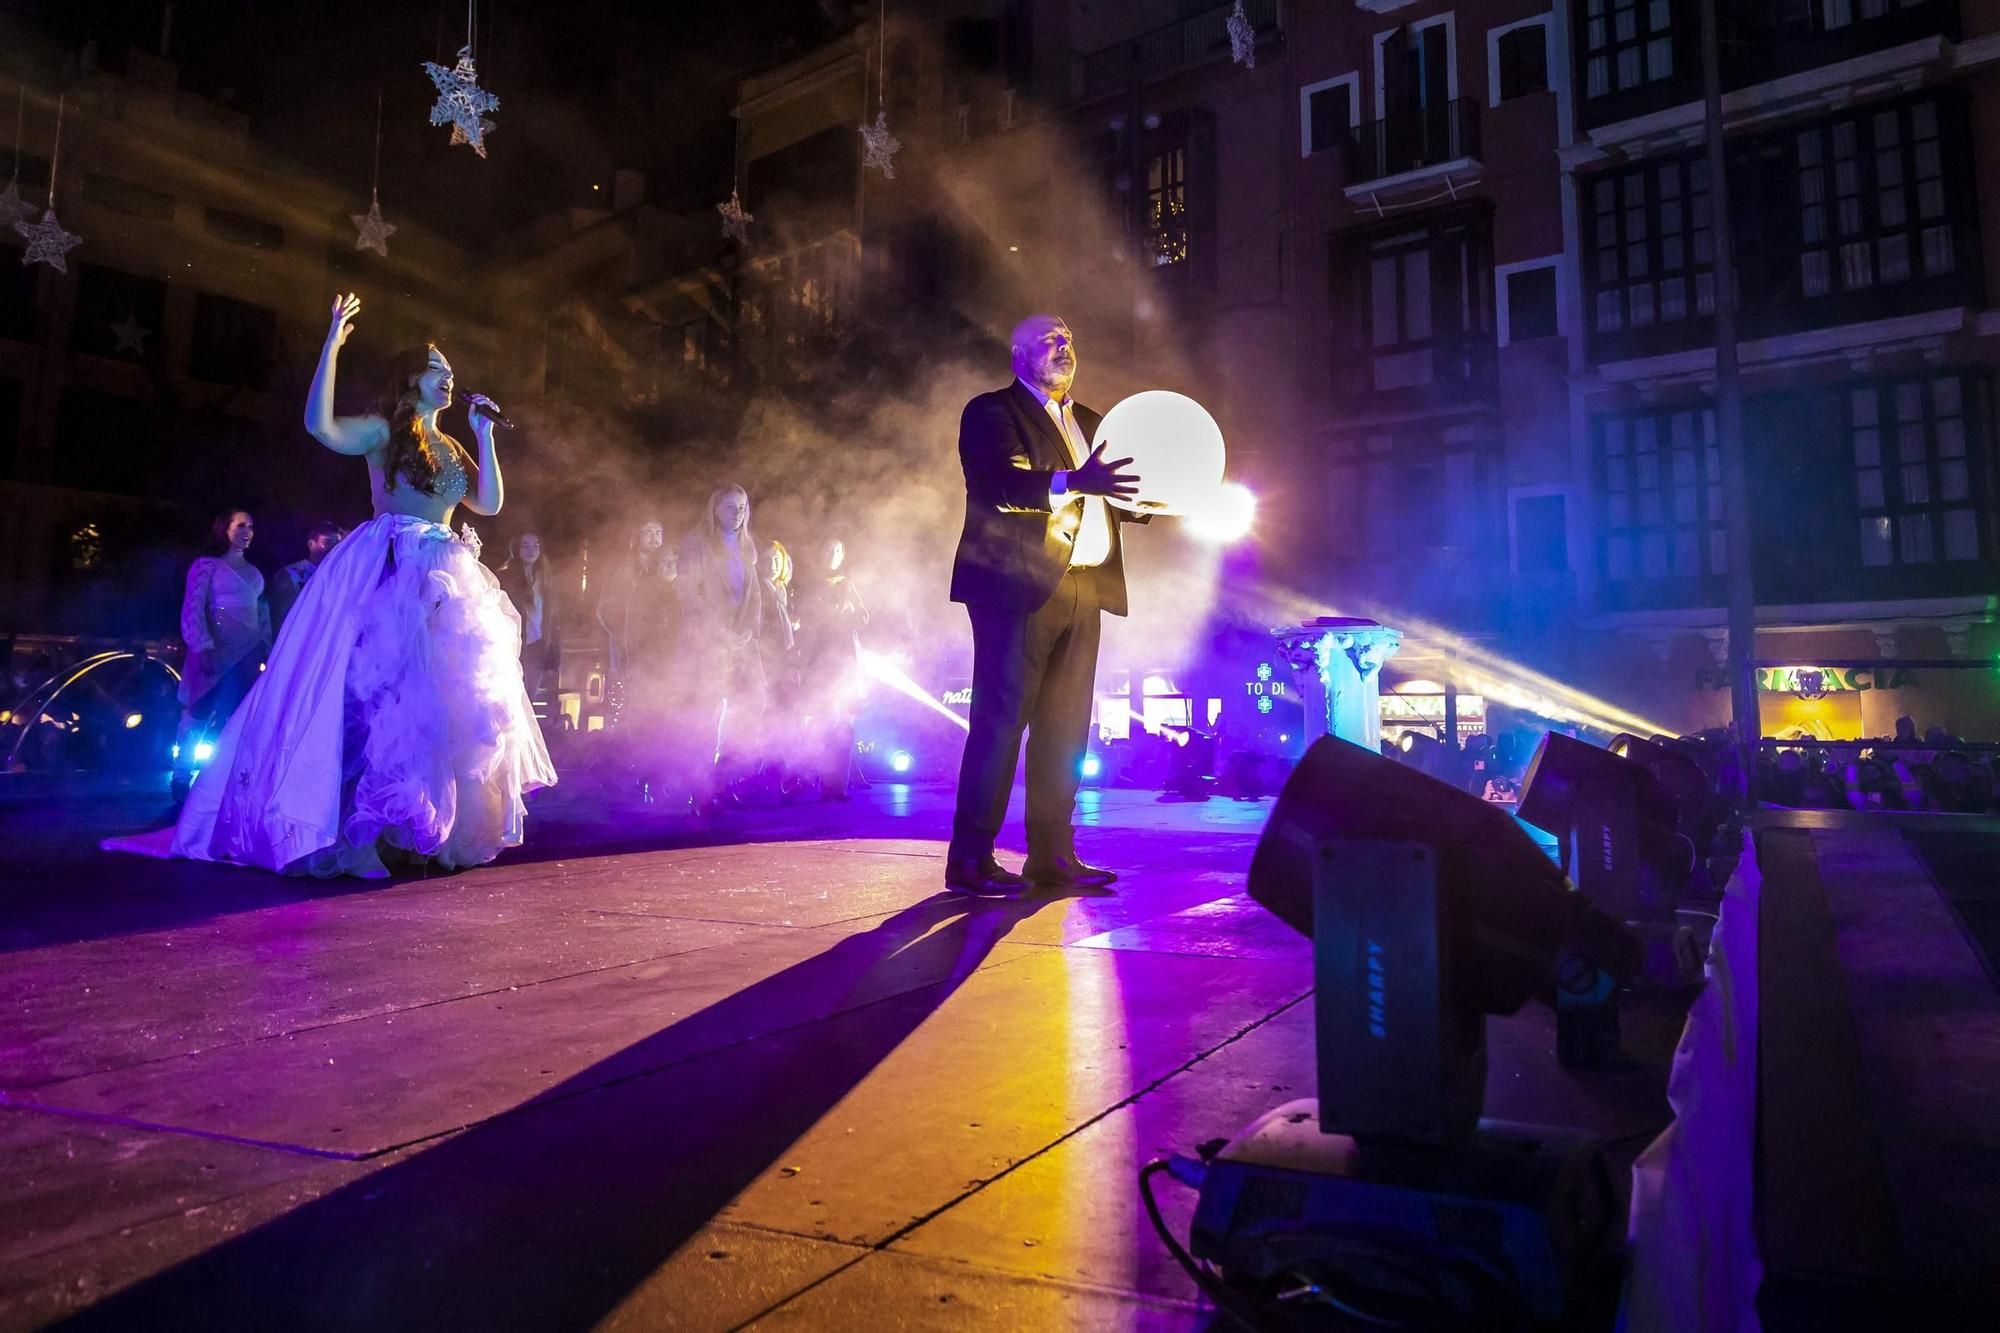 So erlebten die Menschen auf Mallorca das Einschalten der Weihnachtsbeleuchtung in Palma